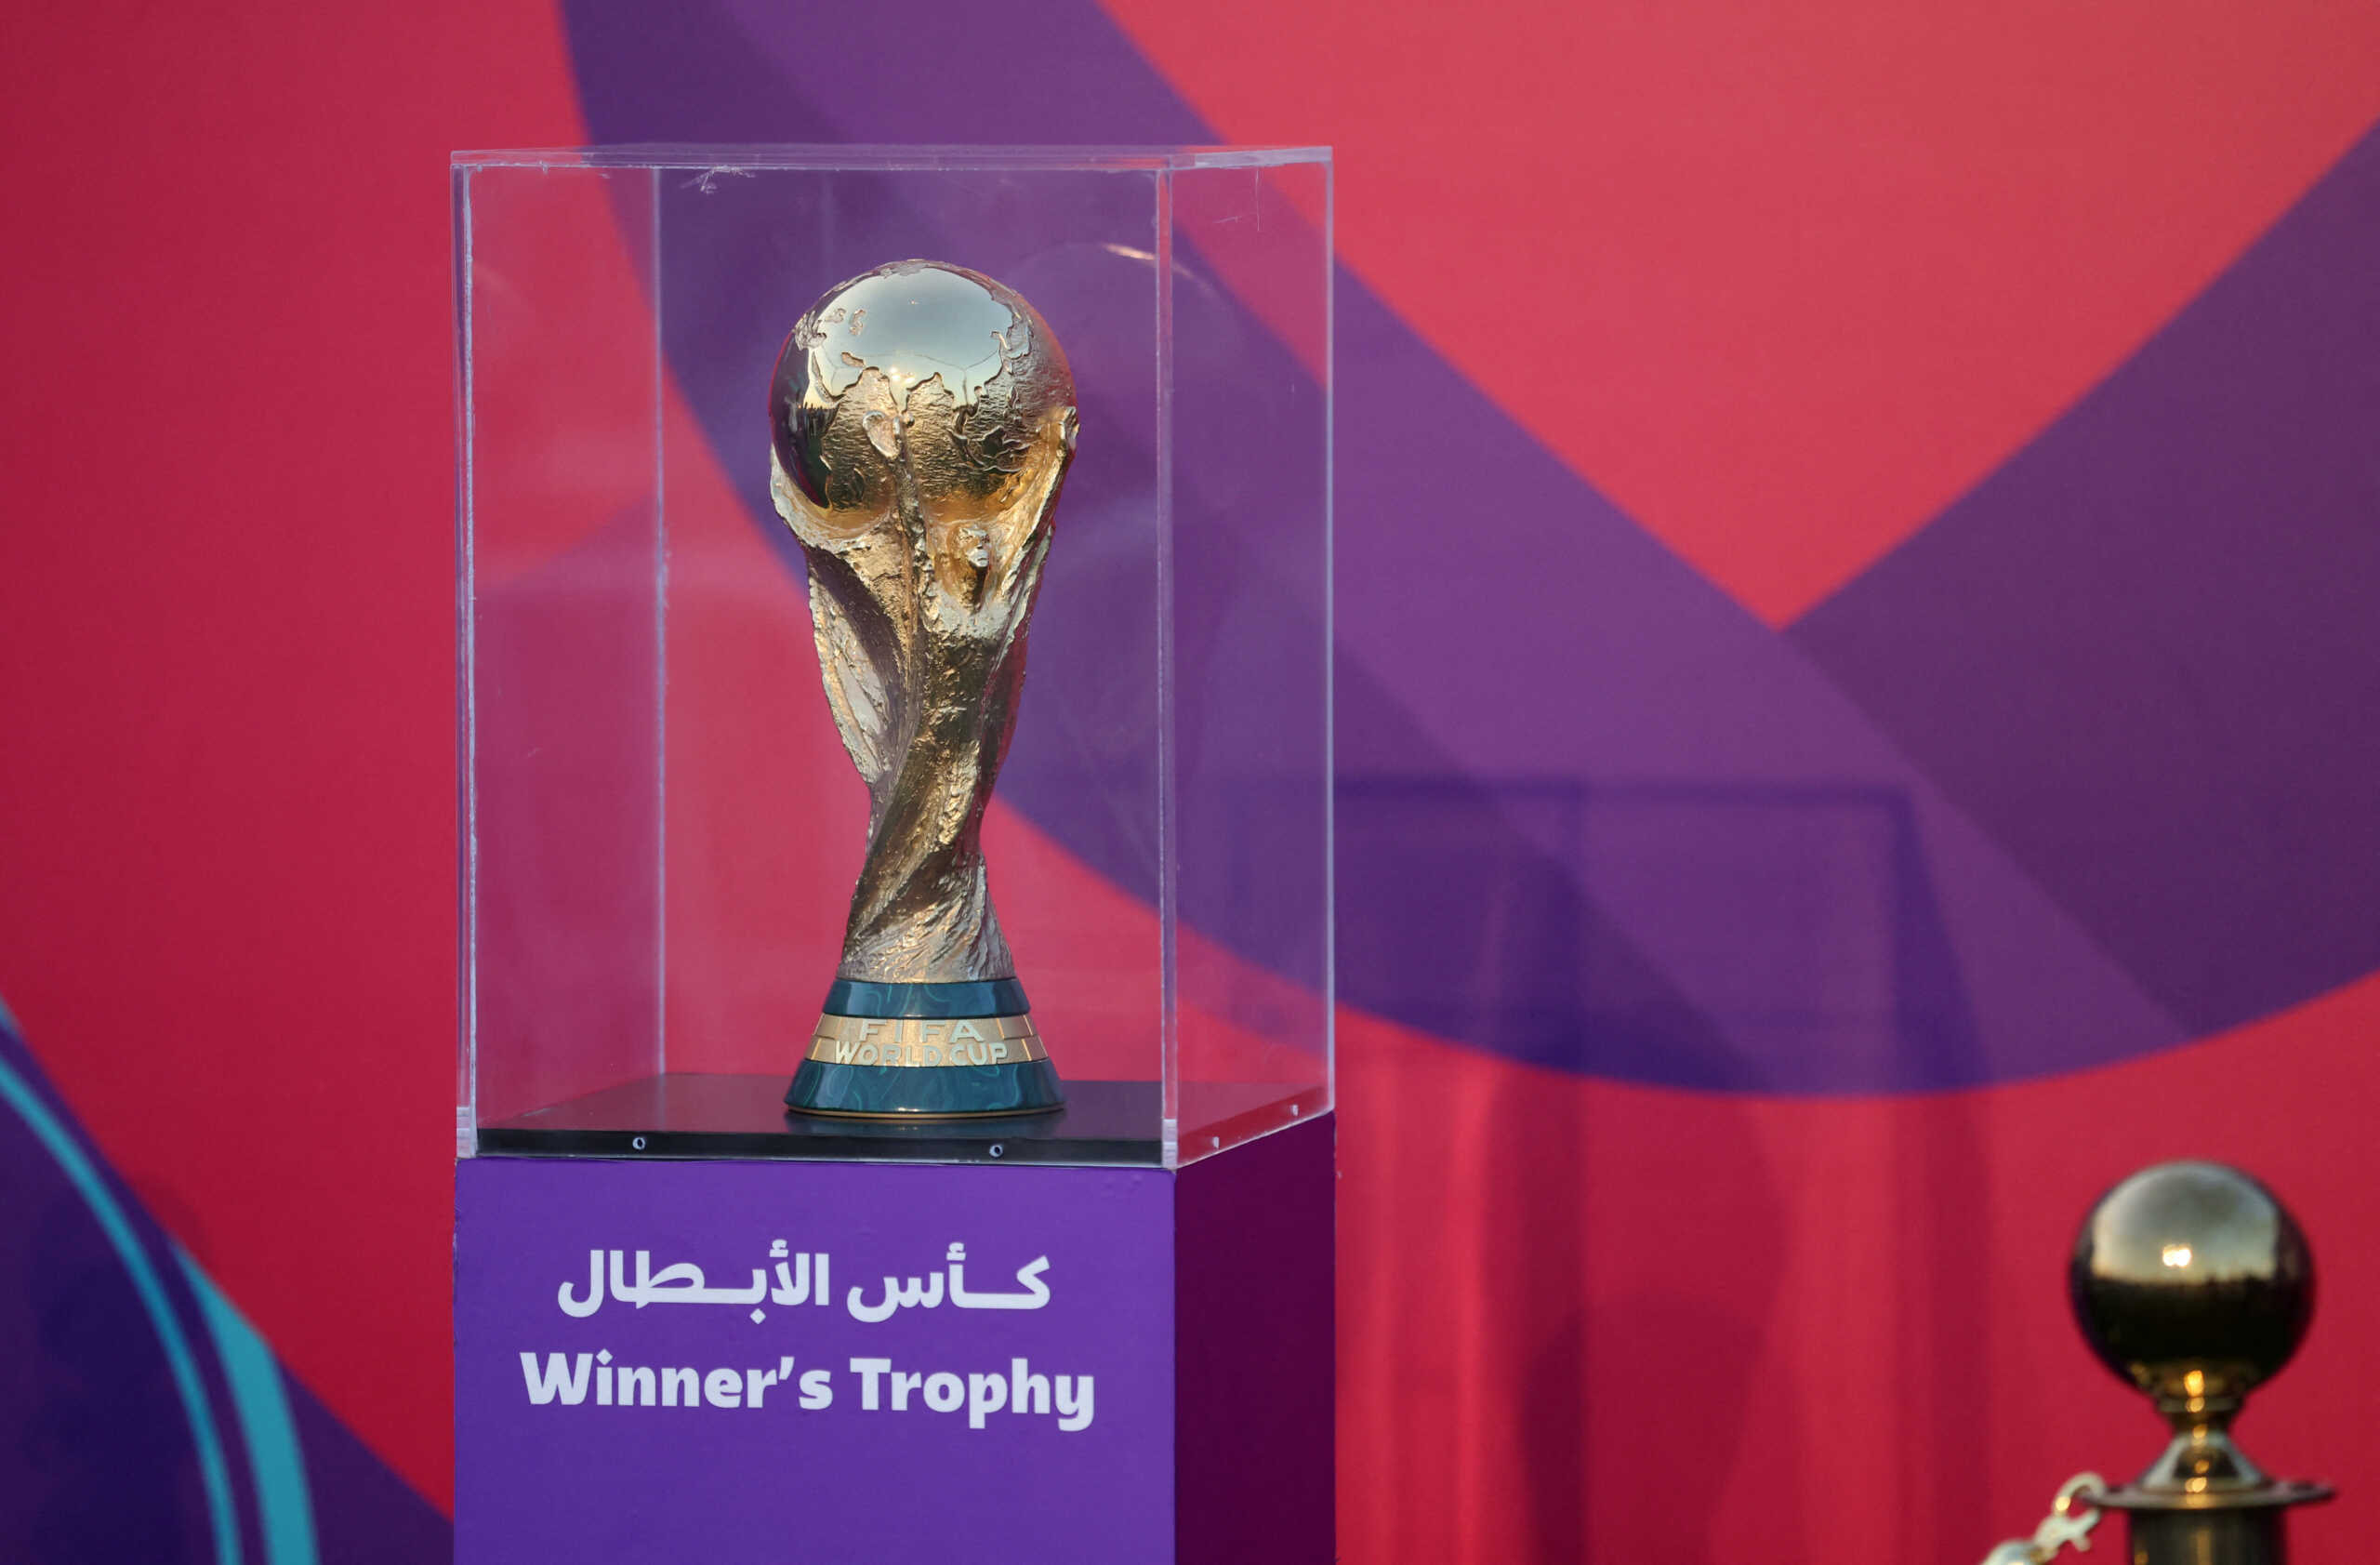 Μουντιάλ 2022: Premier League και Μπάγερν Μονάχου την πρωτιά σε ποδοσφαιριστές στη διοργάνωση του Κατάρ